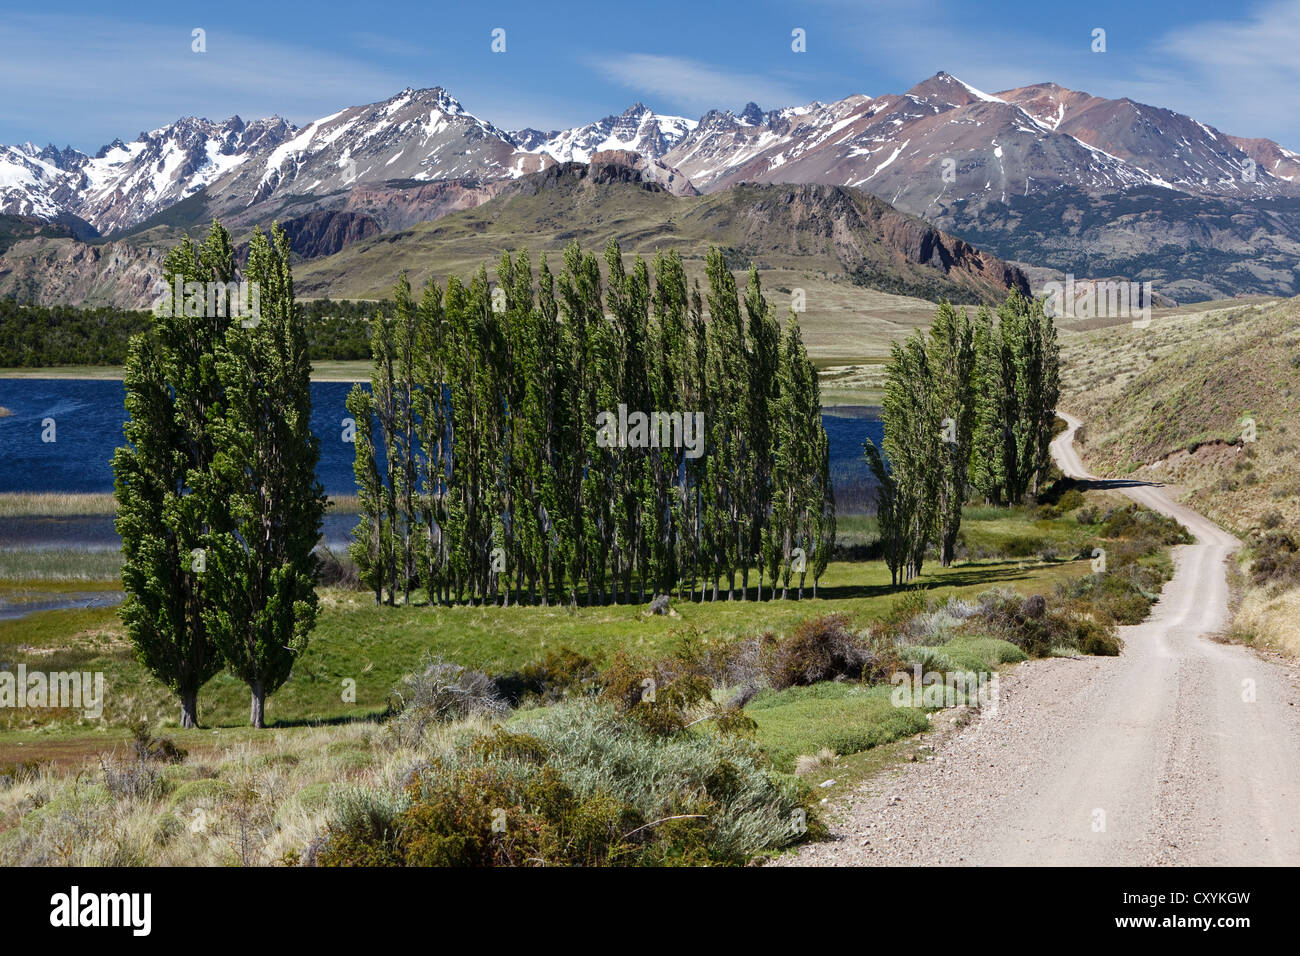 Pappeln, die chilenischen Anden auf der Rückseite, am Fluss Rio Chacabuco, Cochrane, Region de Aysen, Patagonien, Chile, Südamerika Stockfoto